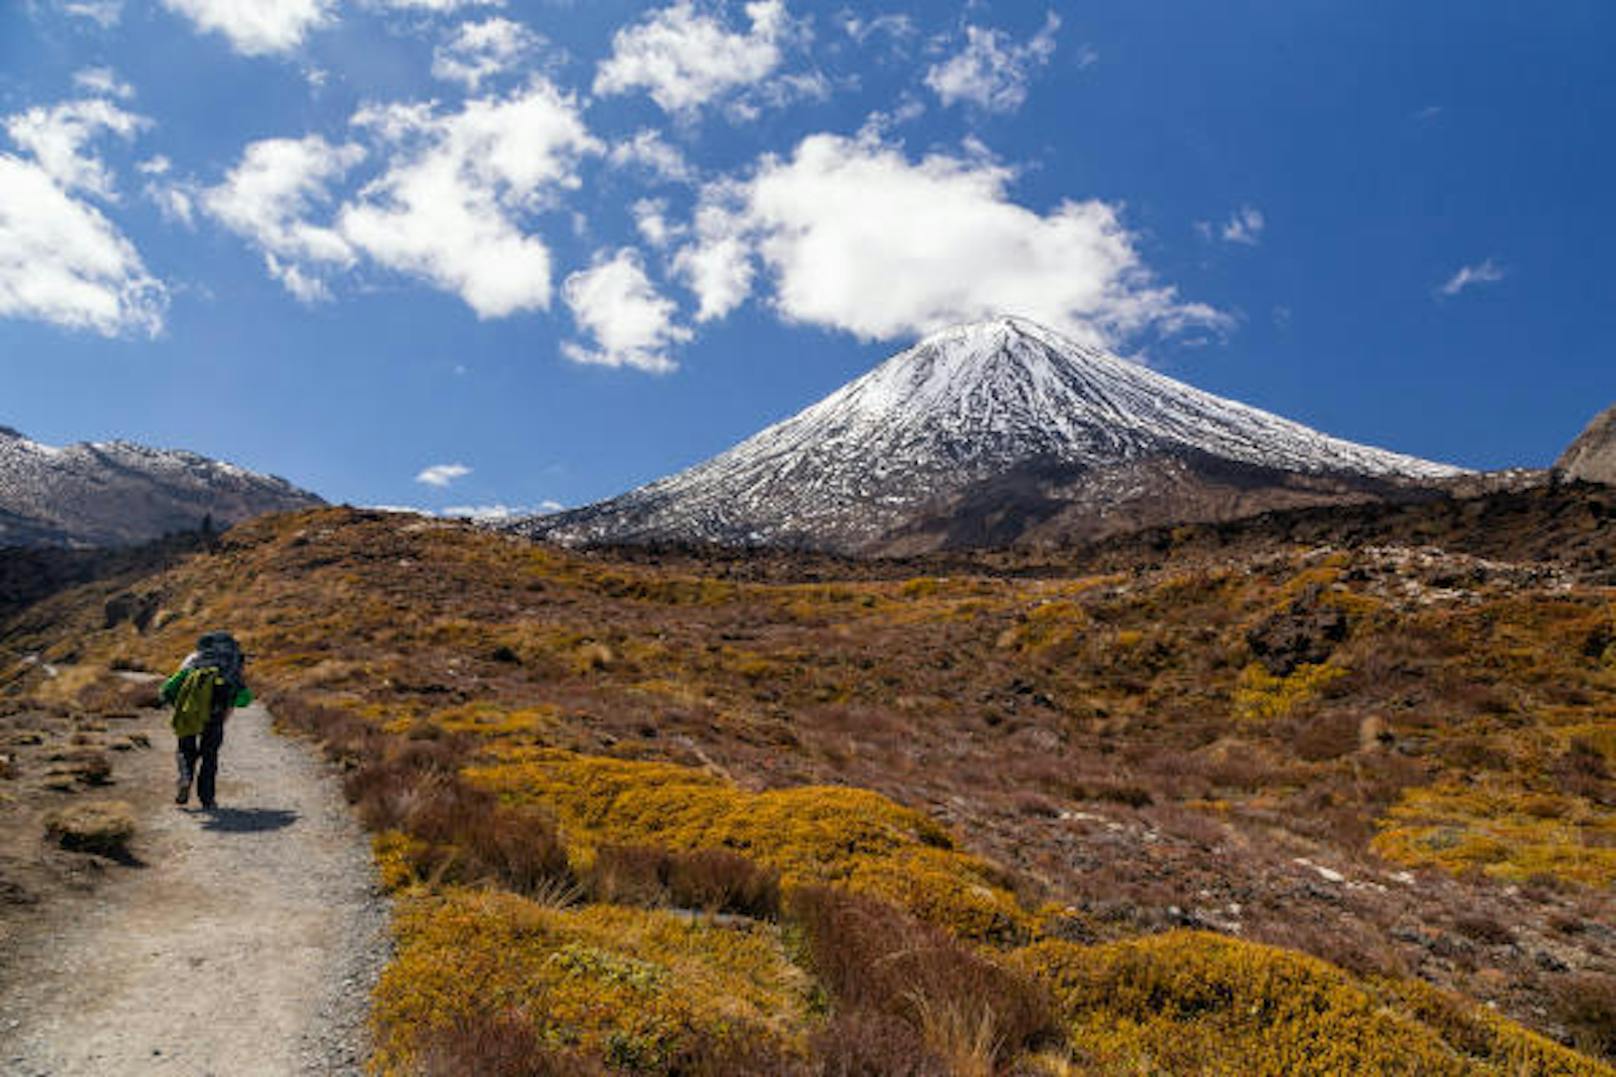 <b>Tongariro Crossing, Neuseeland:</b> Mit vulkanischen Landschaften und mehrfarbigen Seen, die wie aus einer anderen Welt scheinen, gilt dieser Trail auf der Nordinsel als die schönste Tageswanderung des Landes. Distanz: 19,4 Kilometer, Dauer: 6 Stunden, Anforderung: einfach bis mittel.